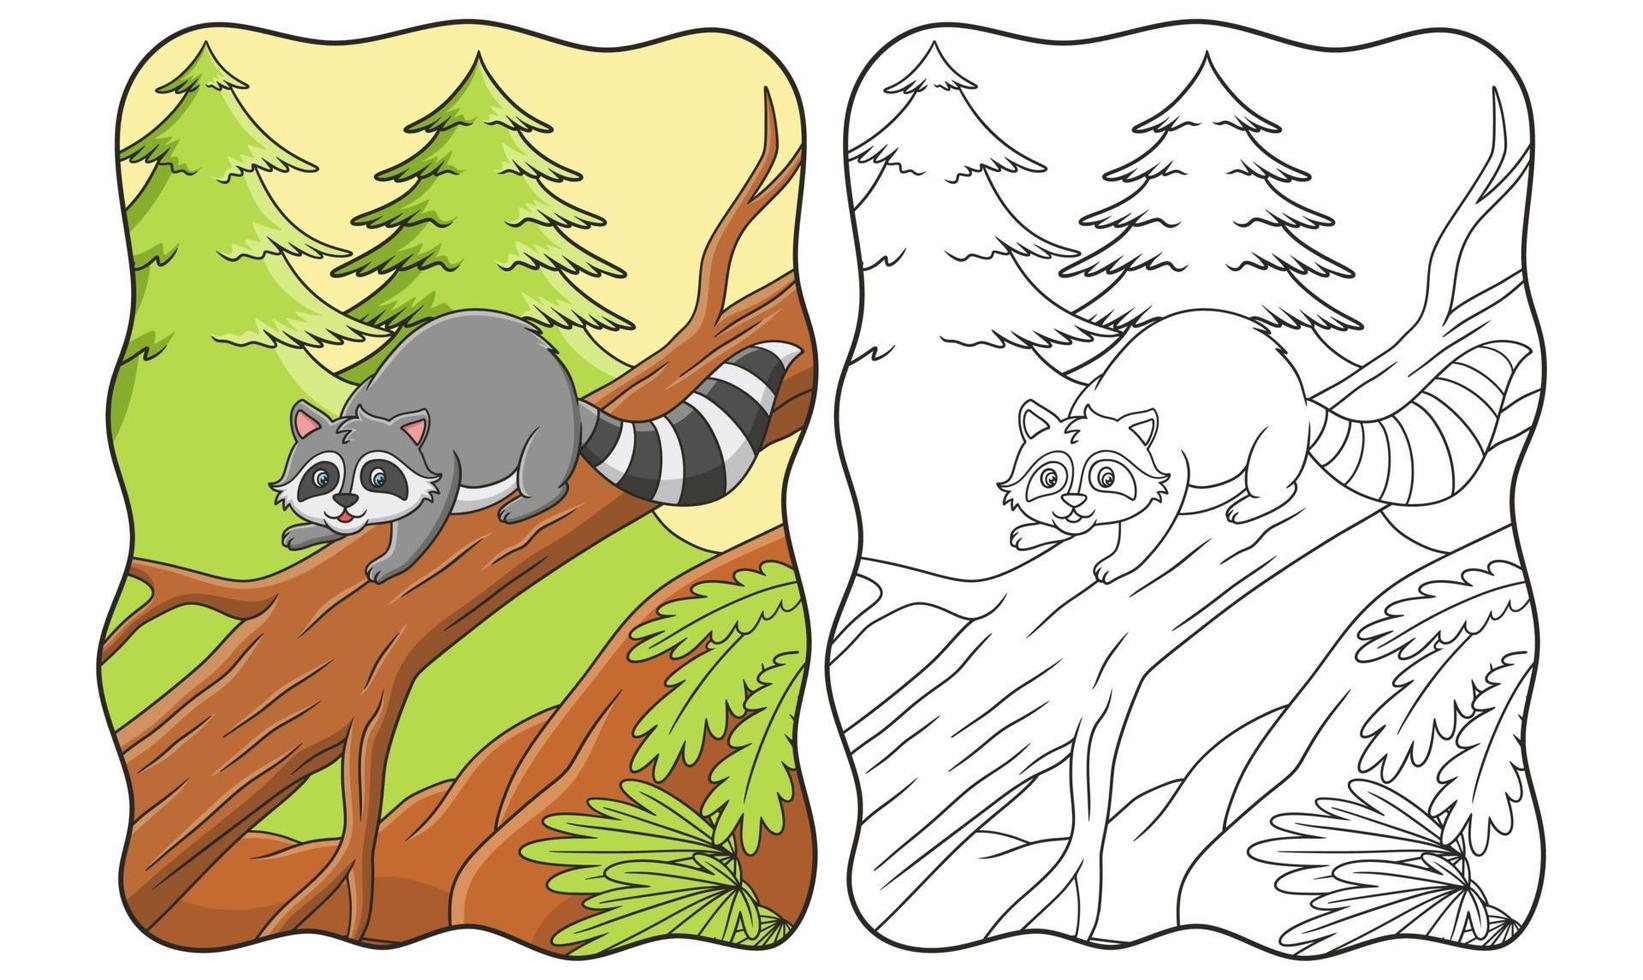 les ratons laveurs d'illustration de dessin animé se détendent sur des troncs d'arbres au milieu de la forêt pour profiter du livre ou de la page du soleil pour les enfants vecteur